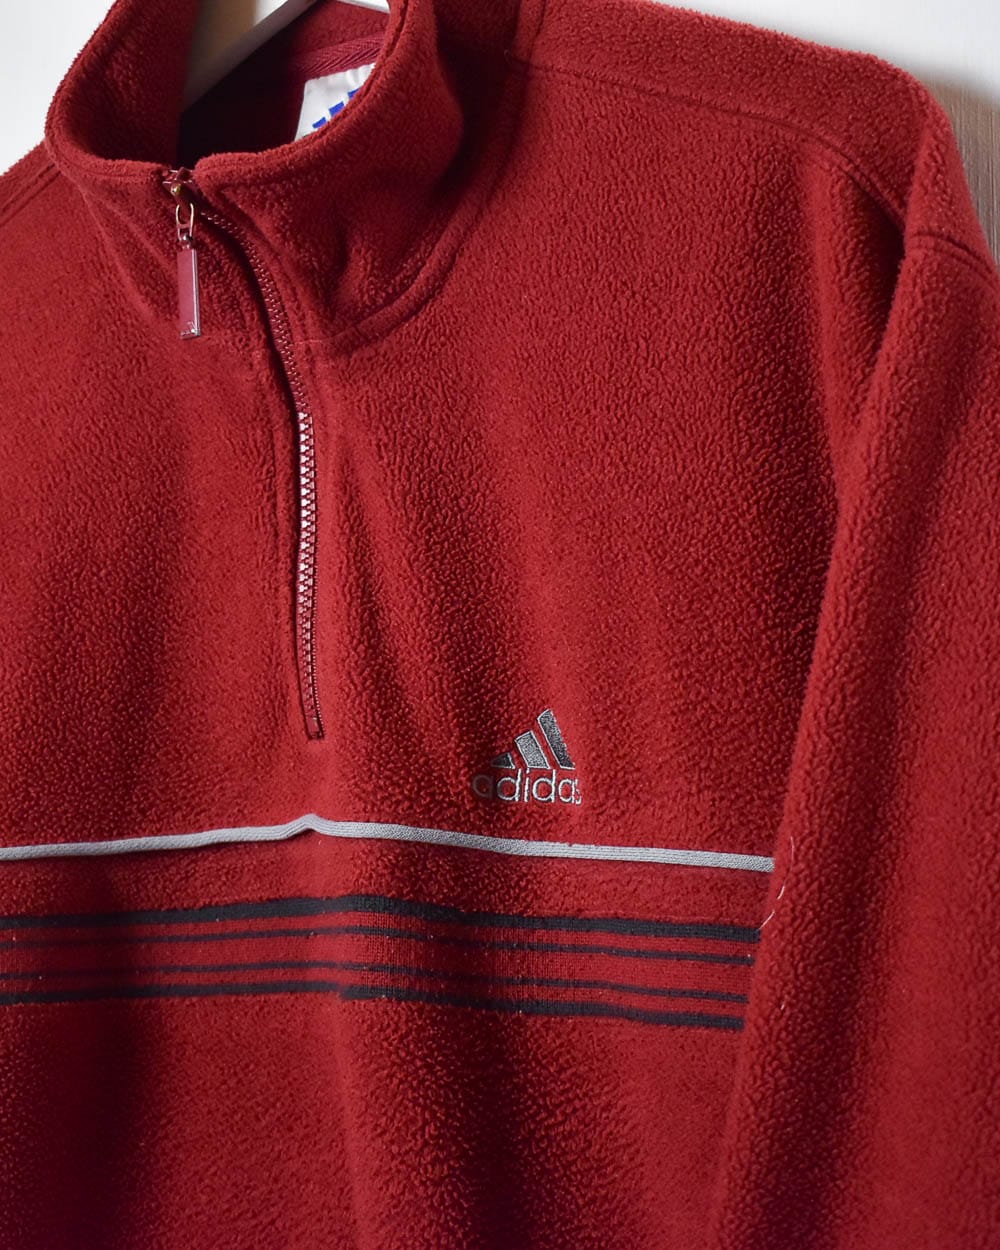 Red Adidas 1/4 Zip Fleece - Medium